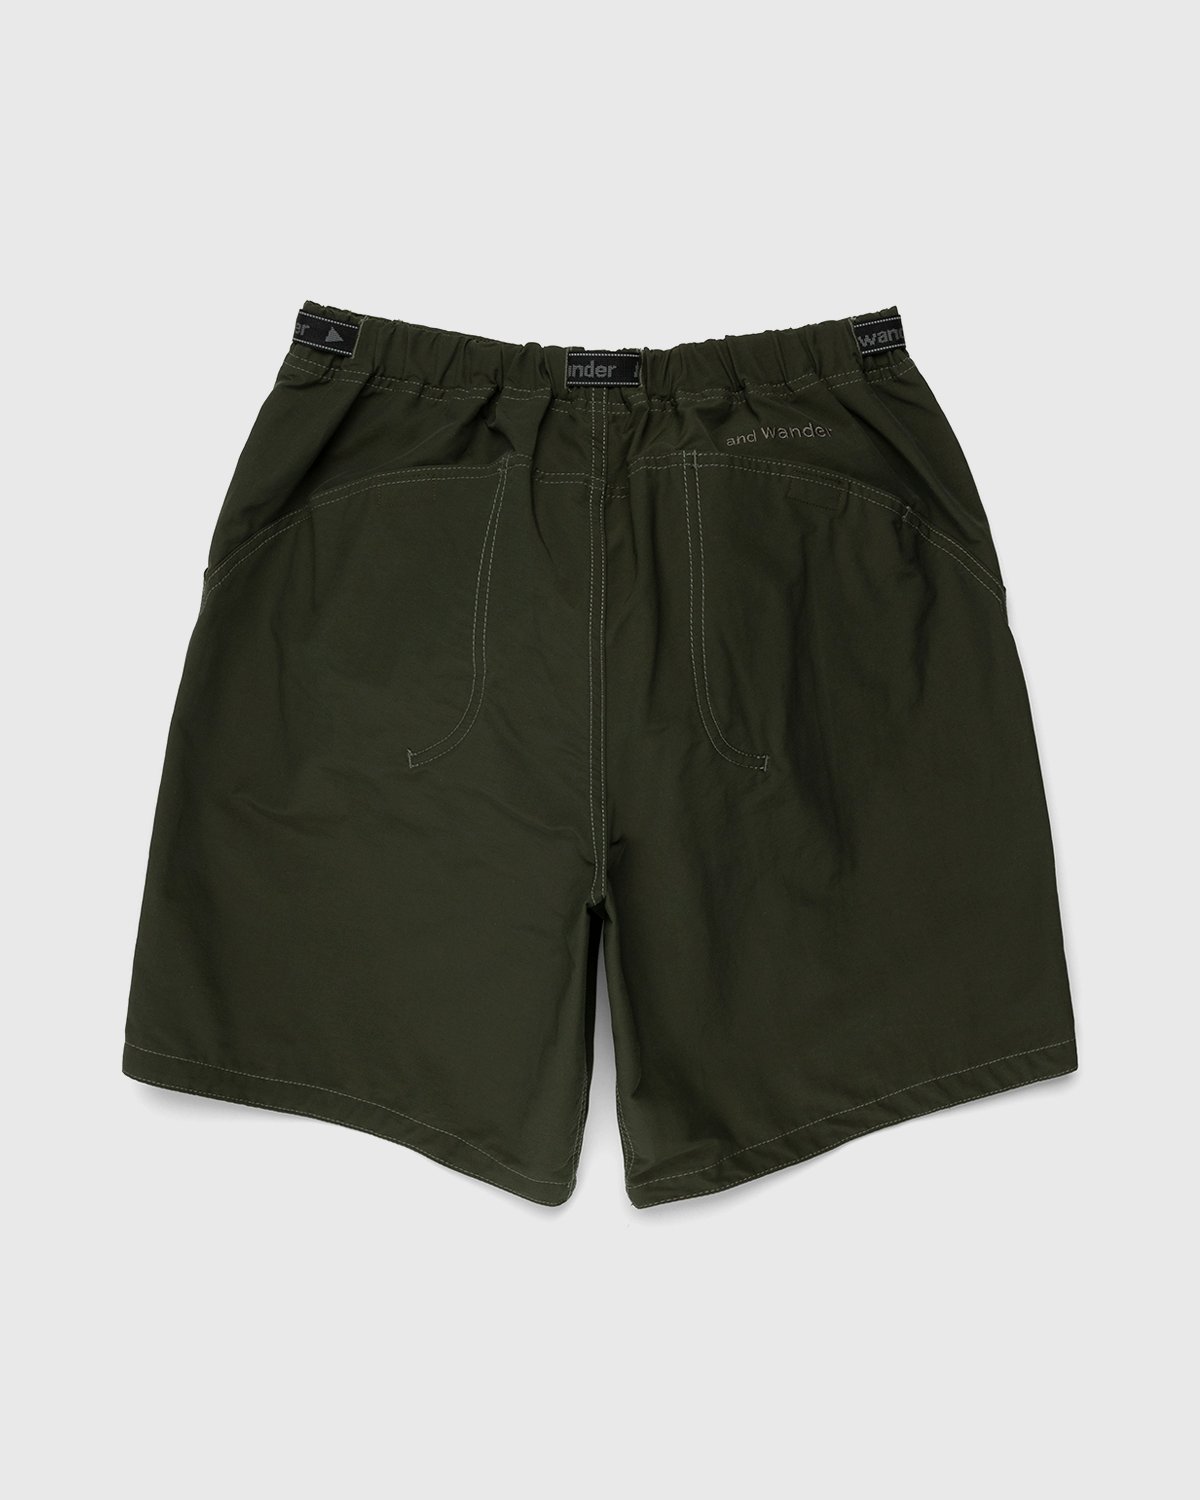 And Wander - 60/40 Cloth Shorts Khaki - Clothing - Green - Image 2